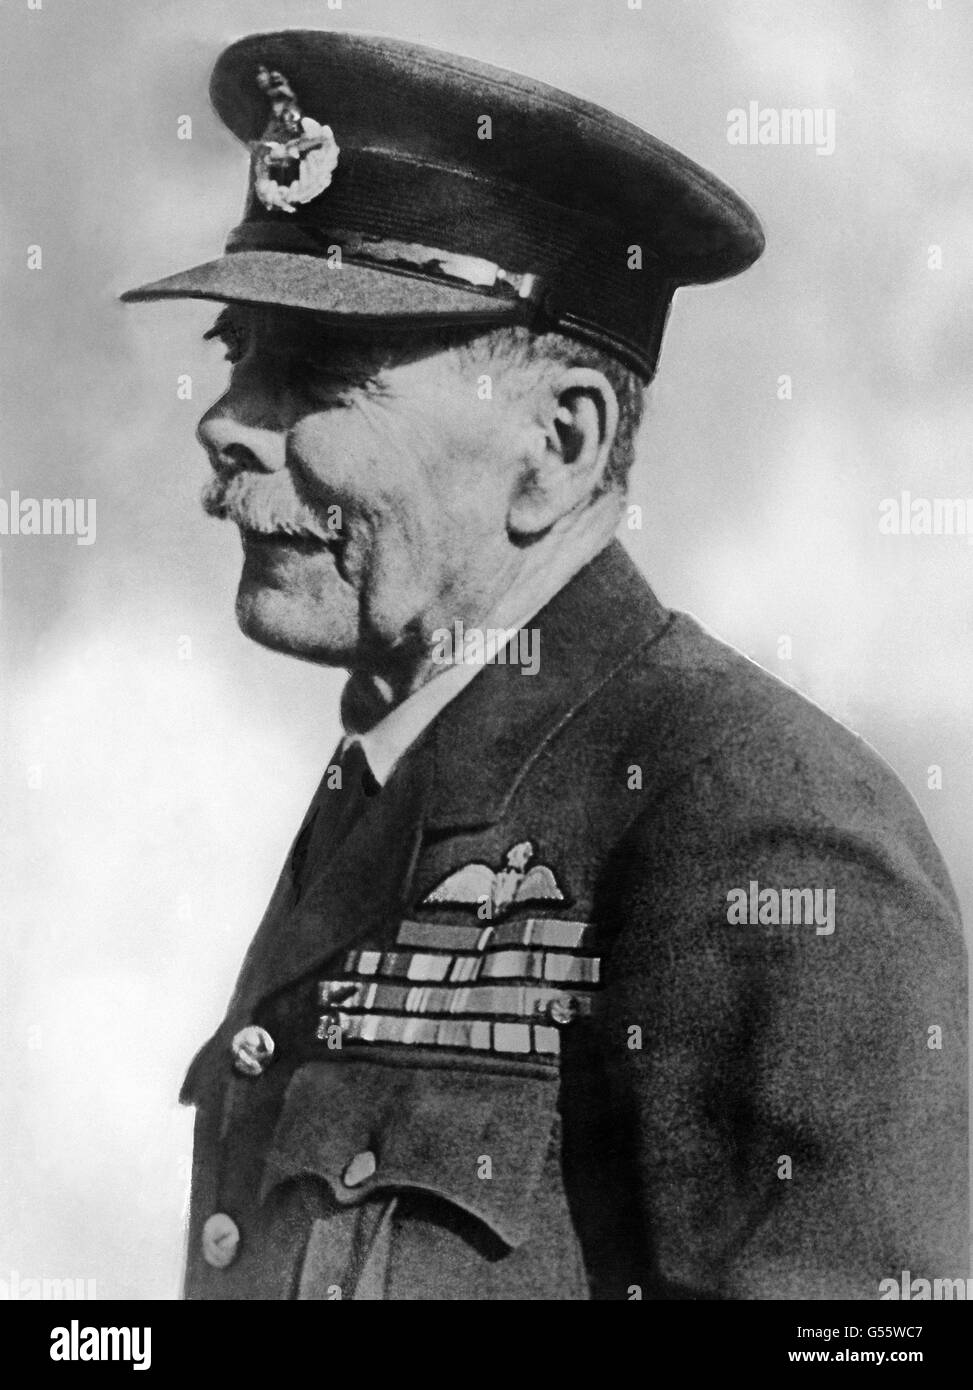 Lord Trenchard, maréchal de l'air royal. Il a joué un rôle déterminant dans la création de la Royal Air Force. Banque D'Images